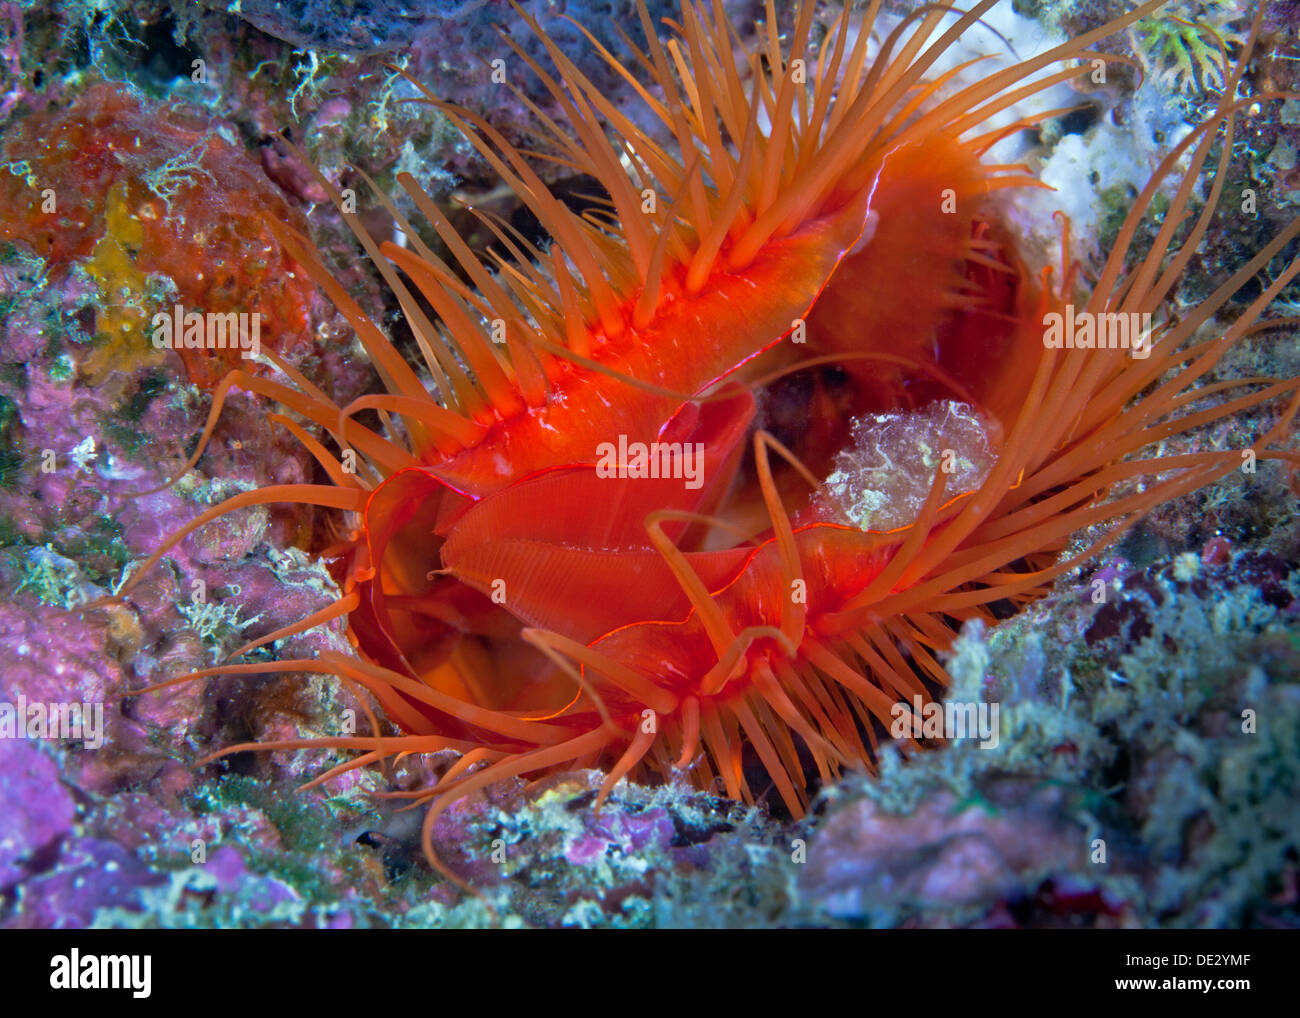 Bouilloire rouge vif clam intégré dans crevasse de blue coral boulder. Banque D'Images